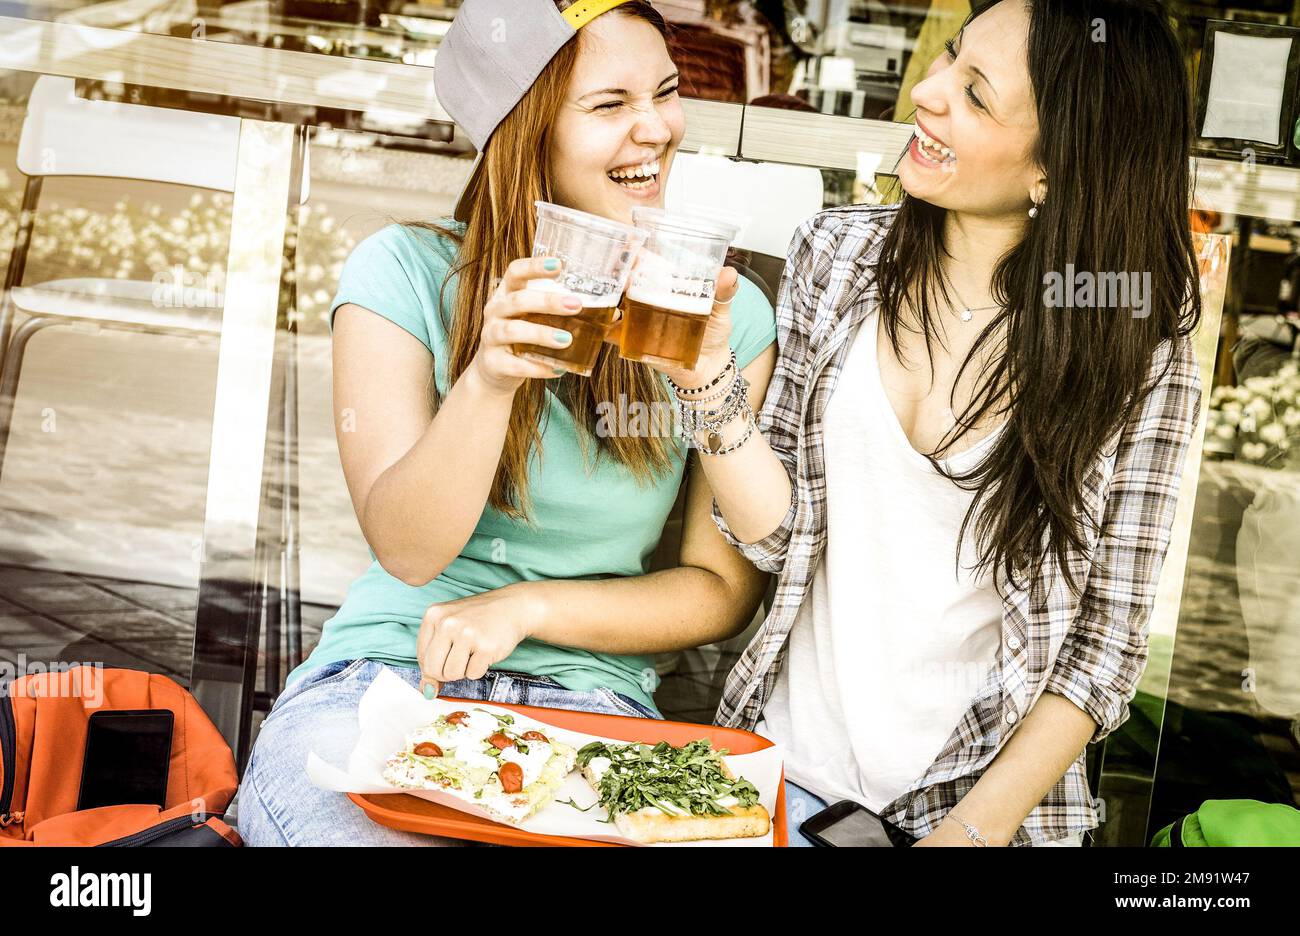 Junge Frauen essen Pizza und trinken Bier im Bar-Restaurant im Freien - Freundschaftskonzept mit glücklichen Freundinnen, die lustige Momente miteinander haben - hübsch Stockfoto